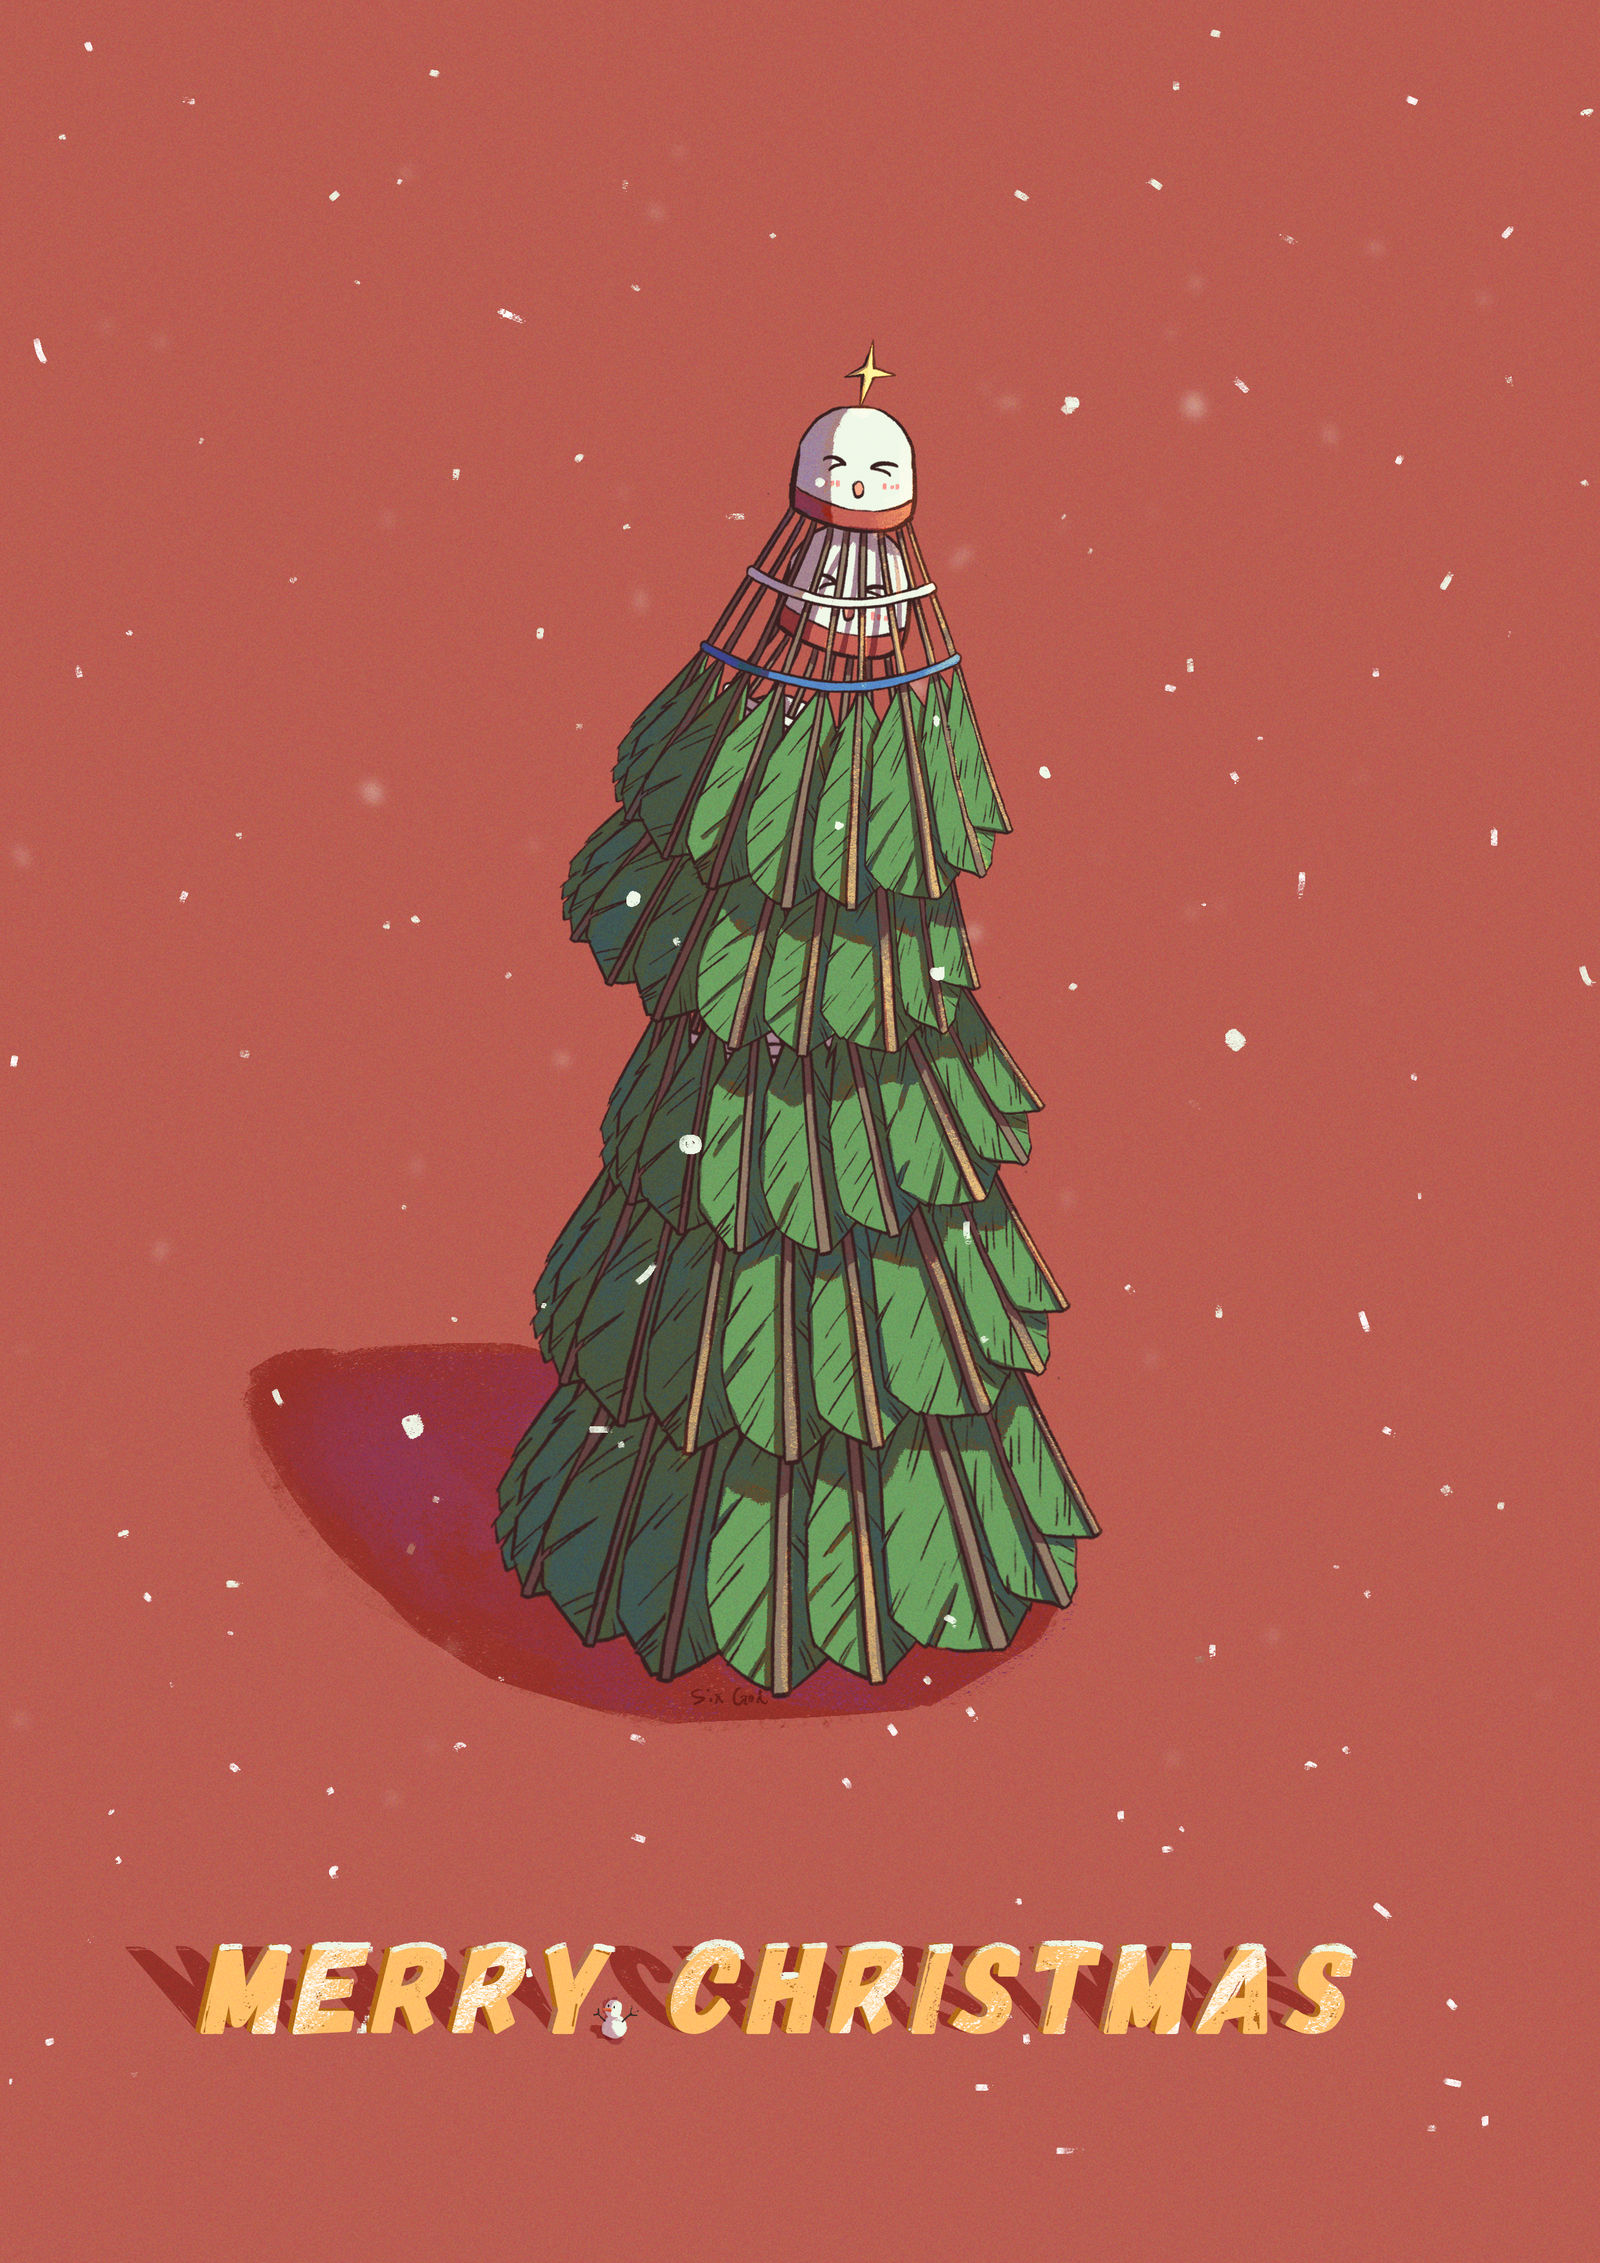 羽毛球圣诞树插画图片壁纸